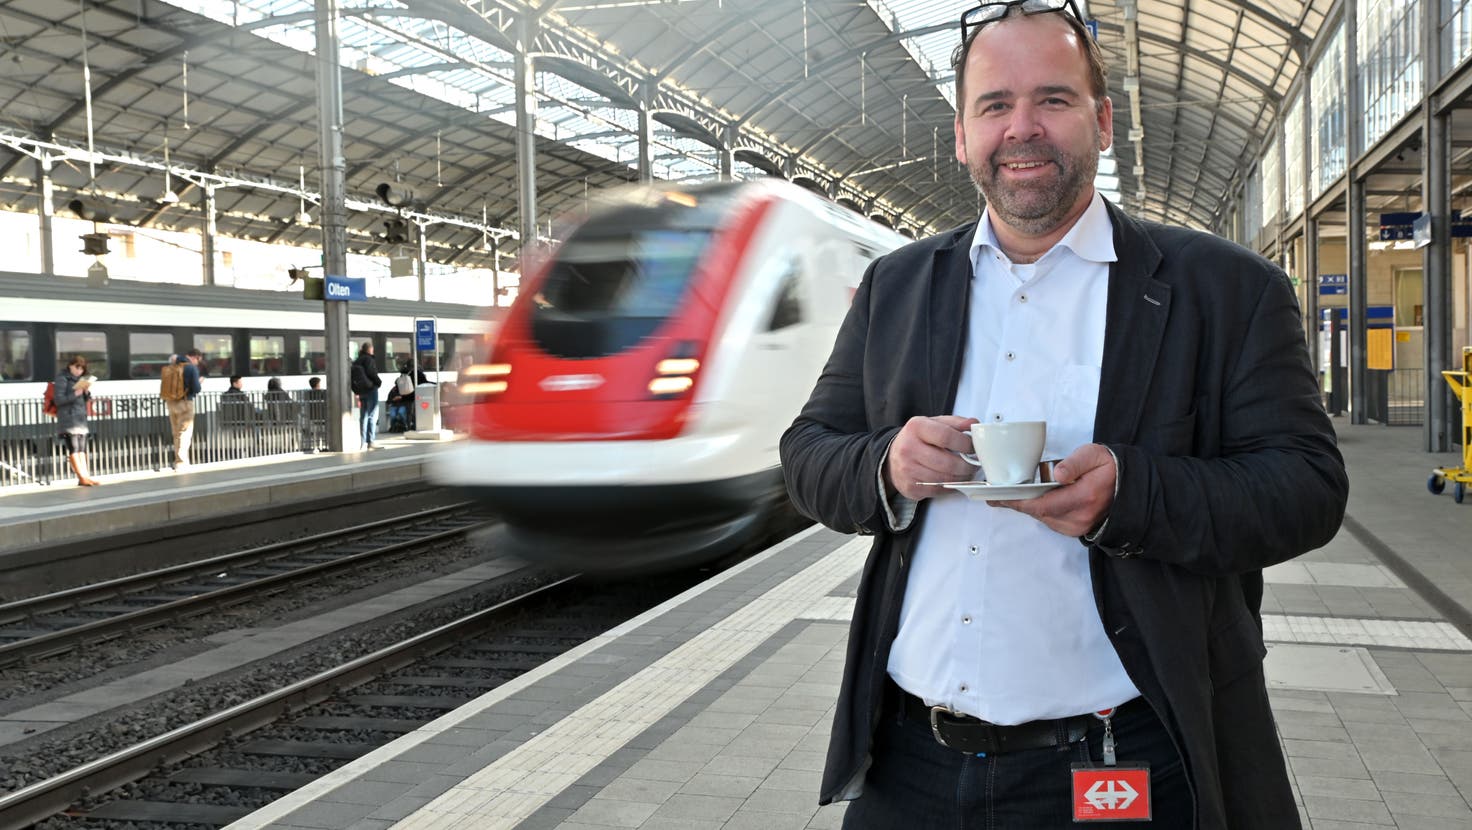 Christian Ginsig, Mediensprecher SBB – hier fotografiert am Bahnhof Olten, als er für eine Serie des Oltner Tagblatts mit Kaffeetasse posiert. (Bruno Kissling / OLT)